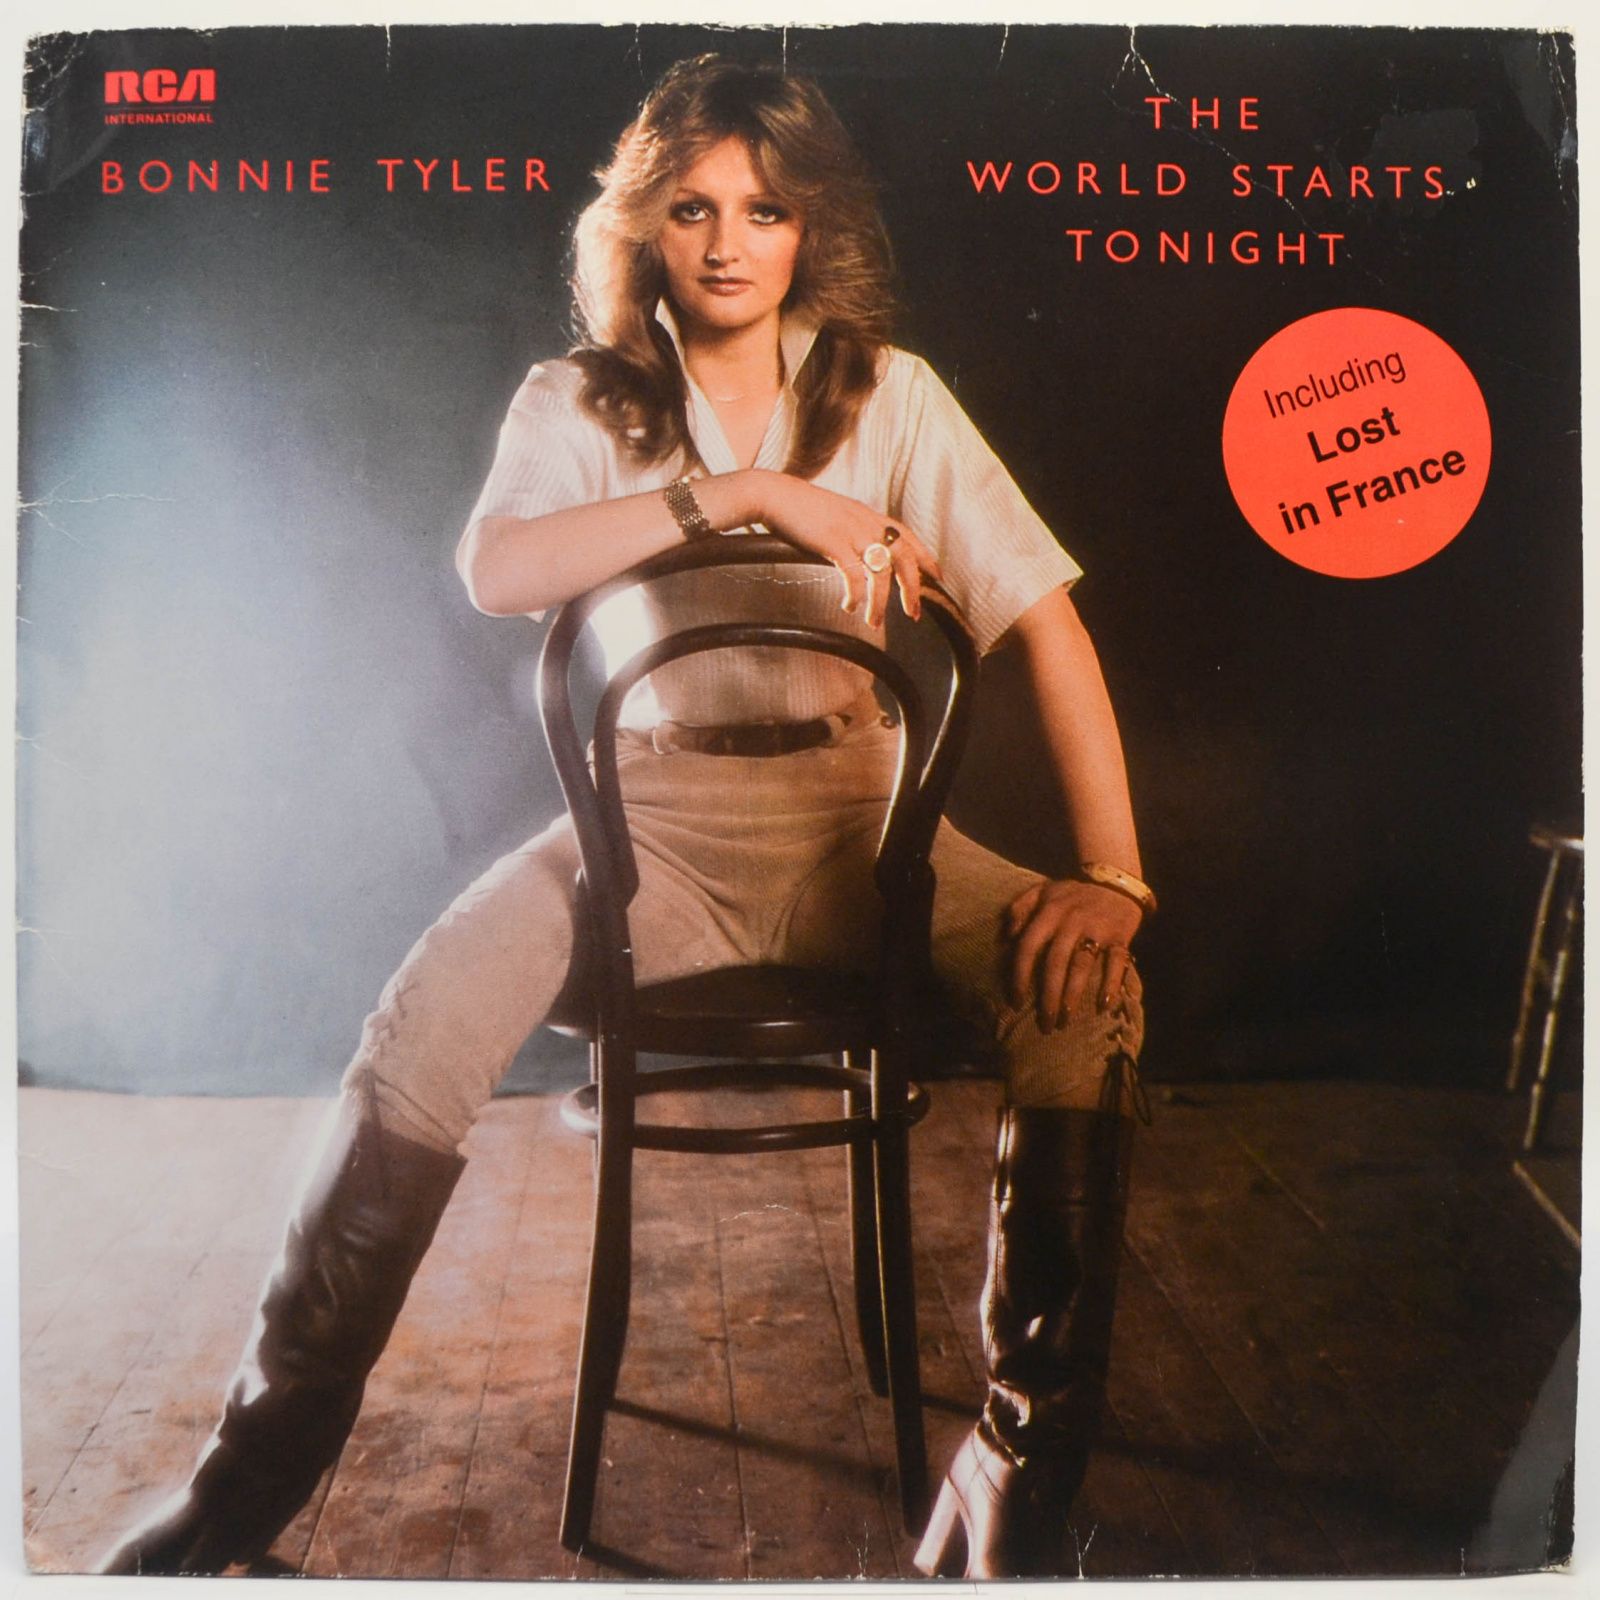 Bonnie Tyler — The World Starts Tonight, 1983